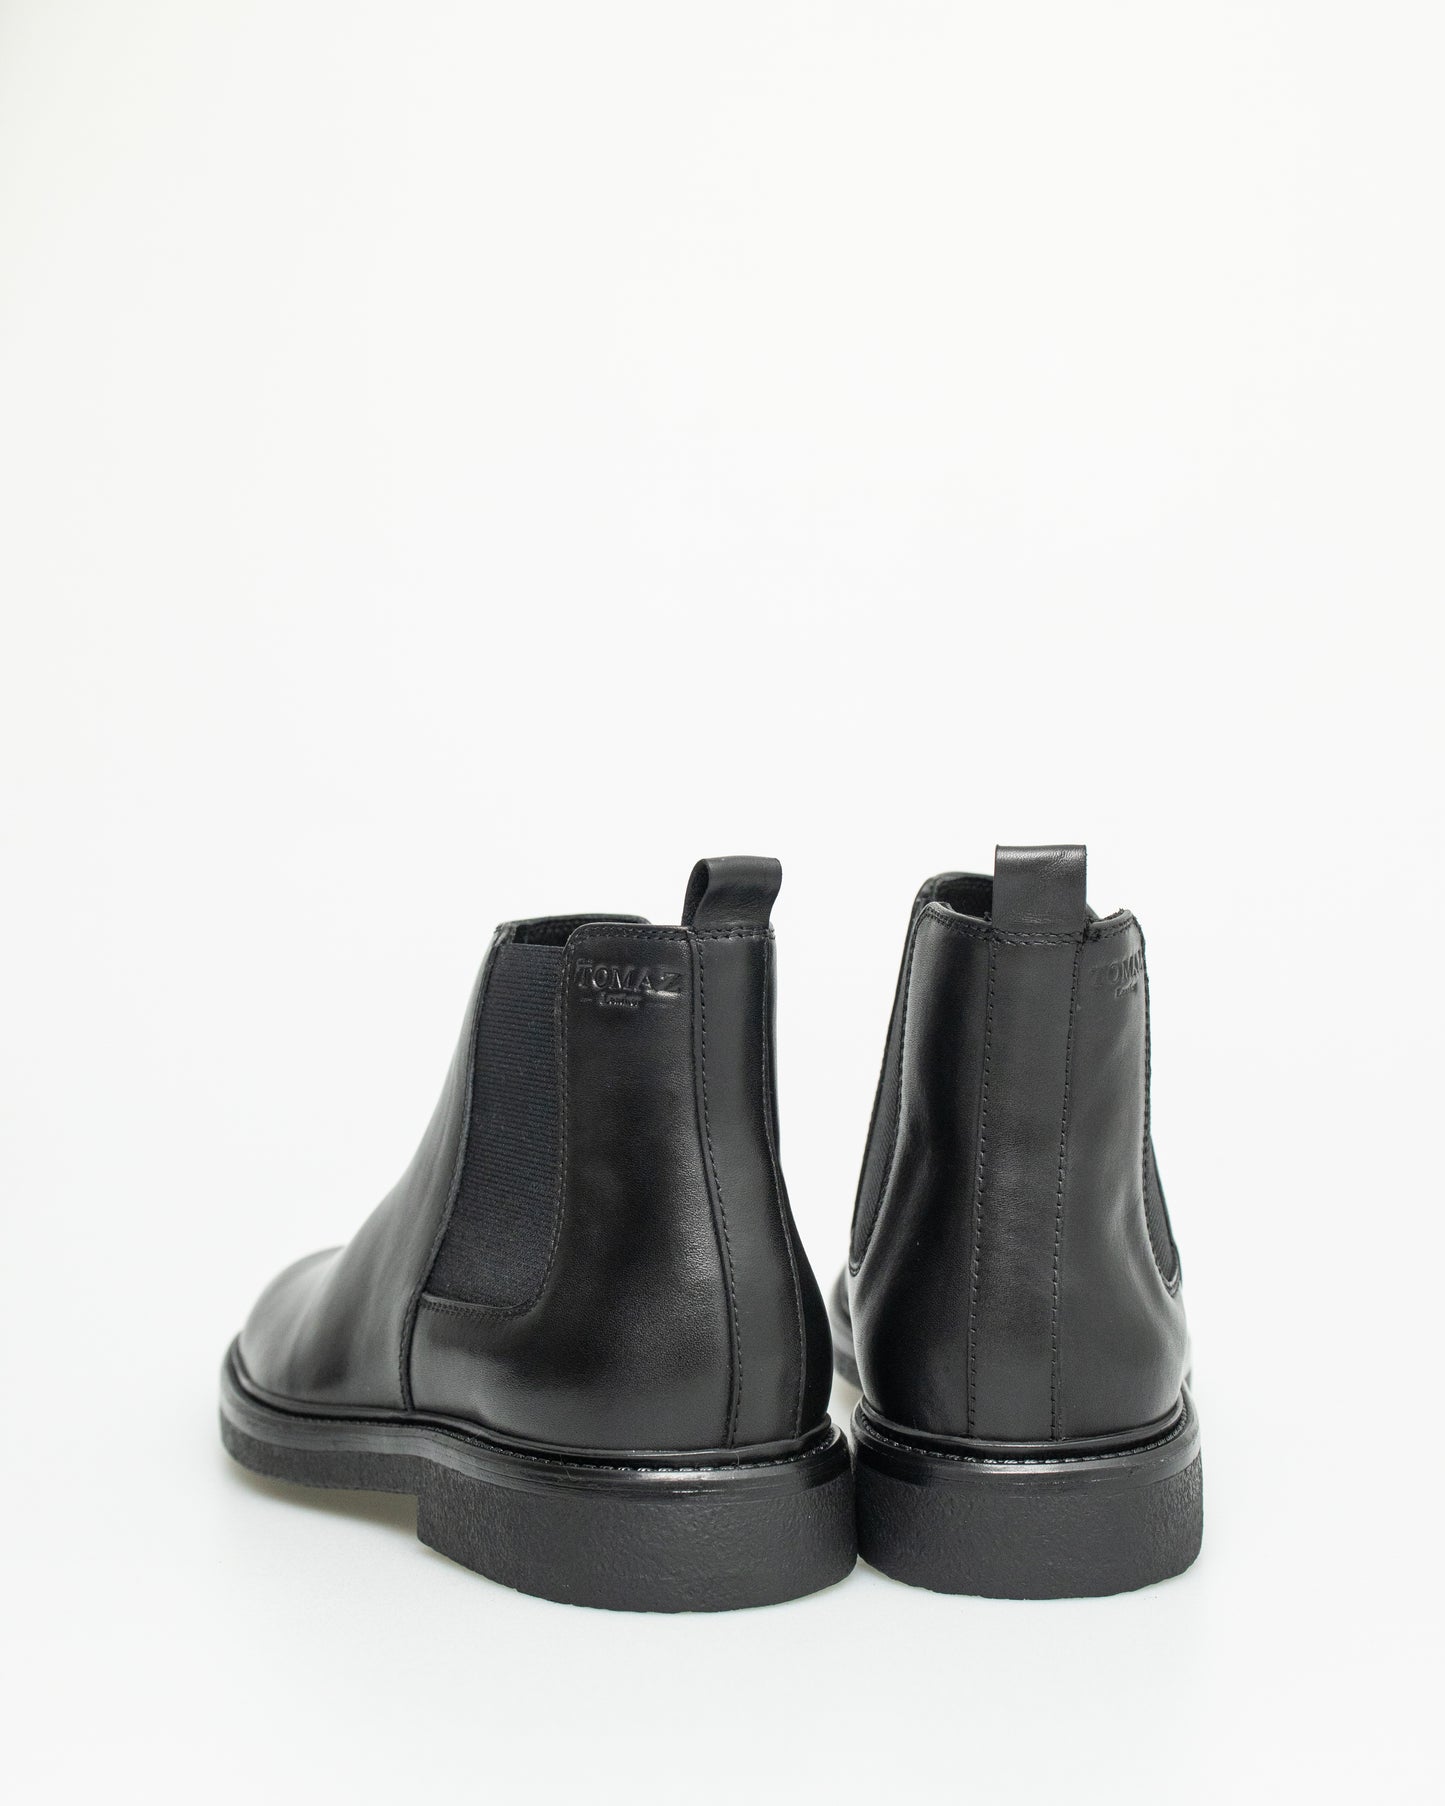 Tomaz F409 Men's Boots (Black)